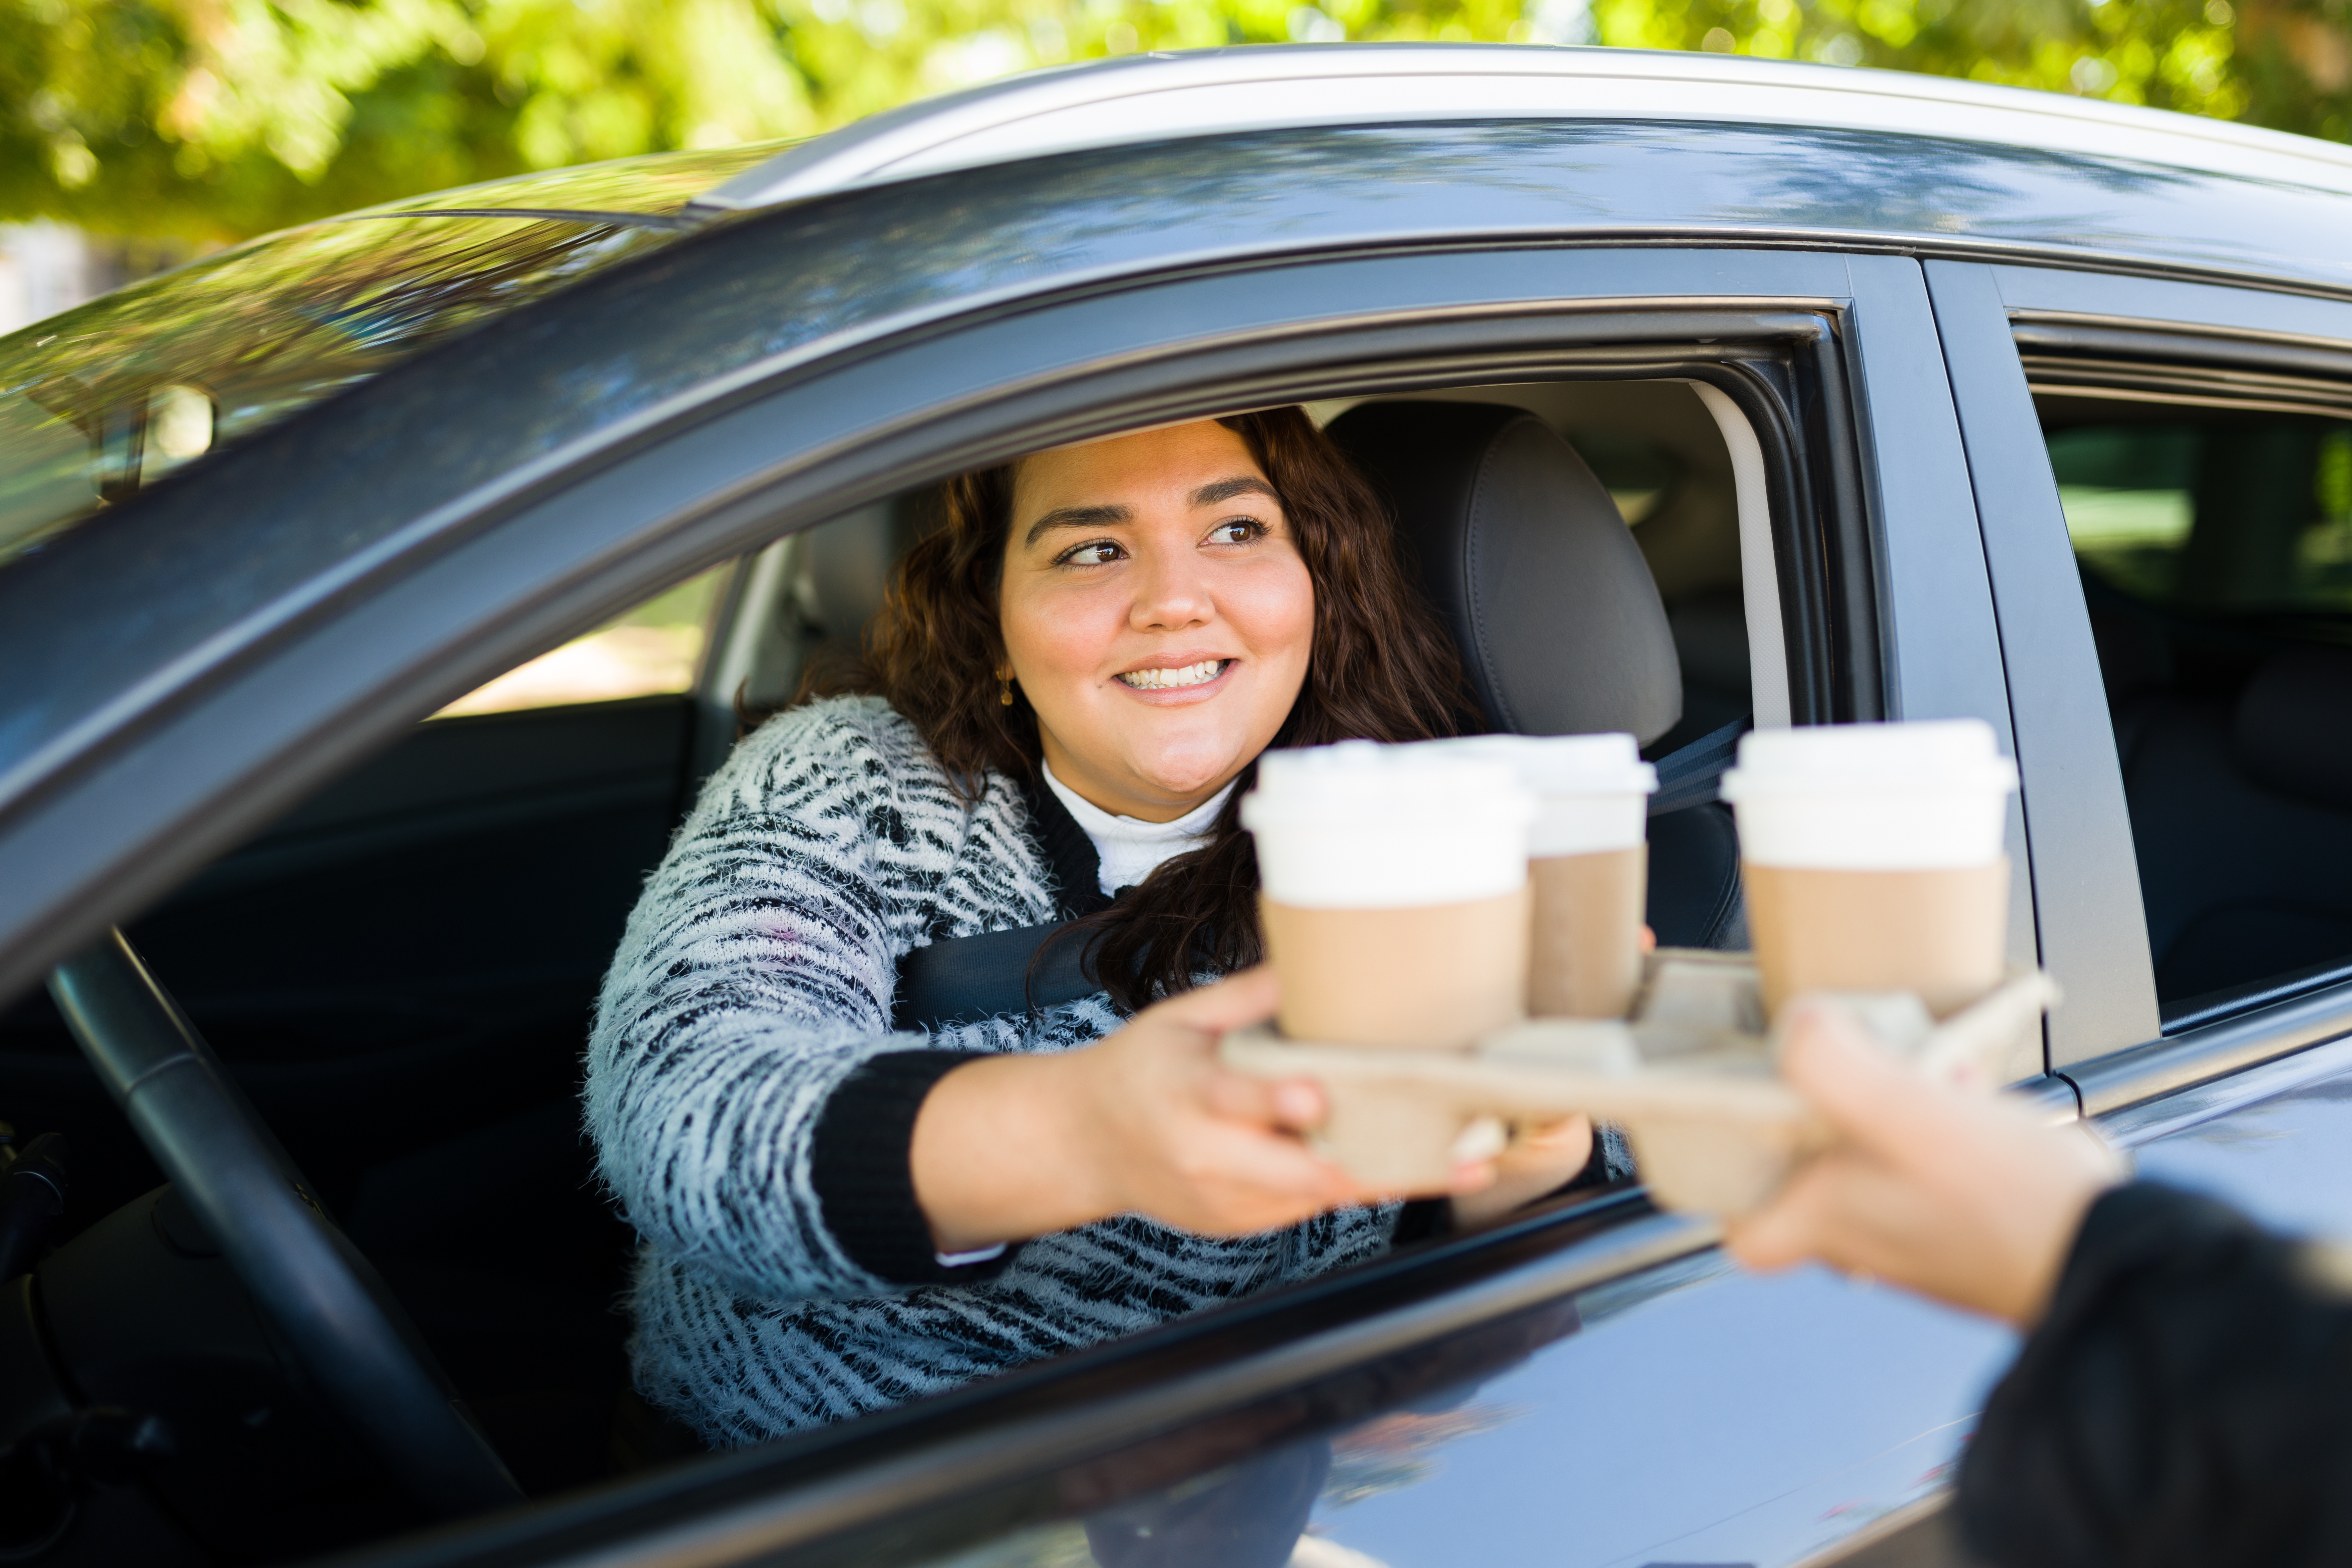 Femme conduisant sa voiture dans un drive thru pour acheter du café | Source : Shutterstock